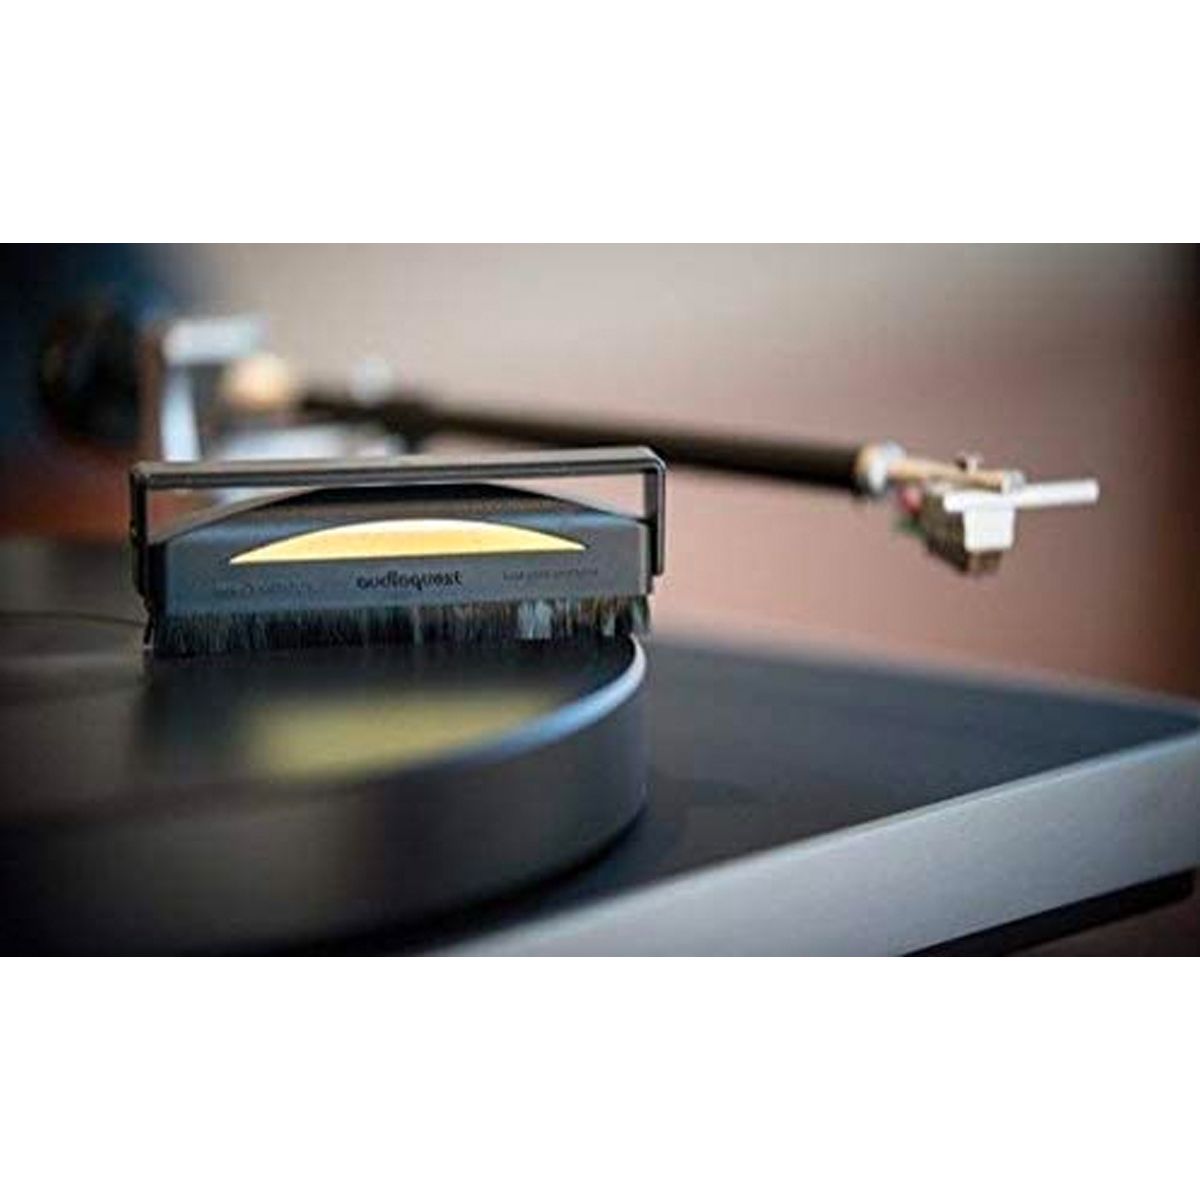 AudioQuest Anti-Static Record Cleaner Brush